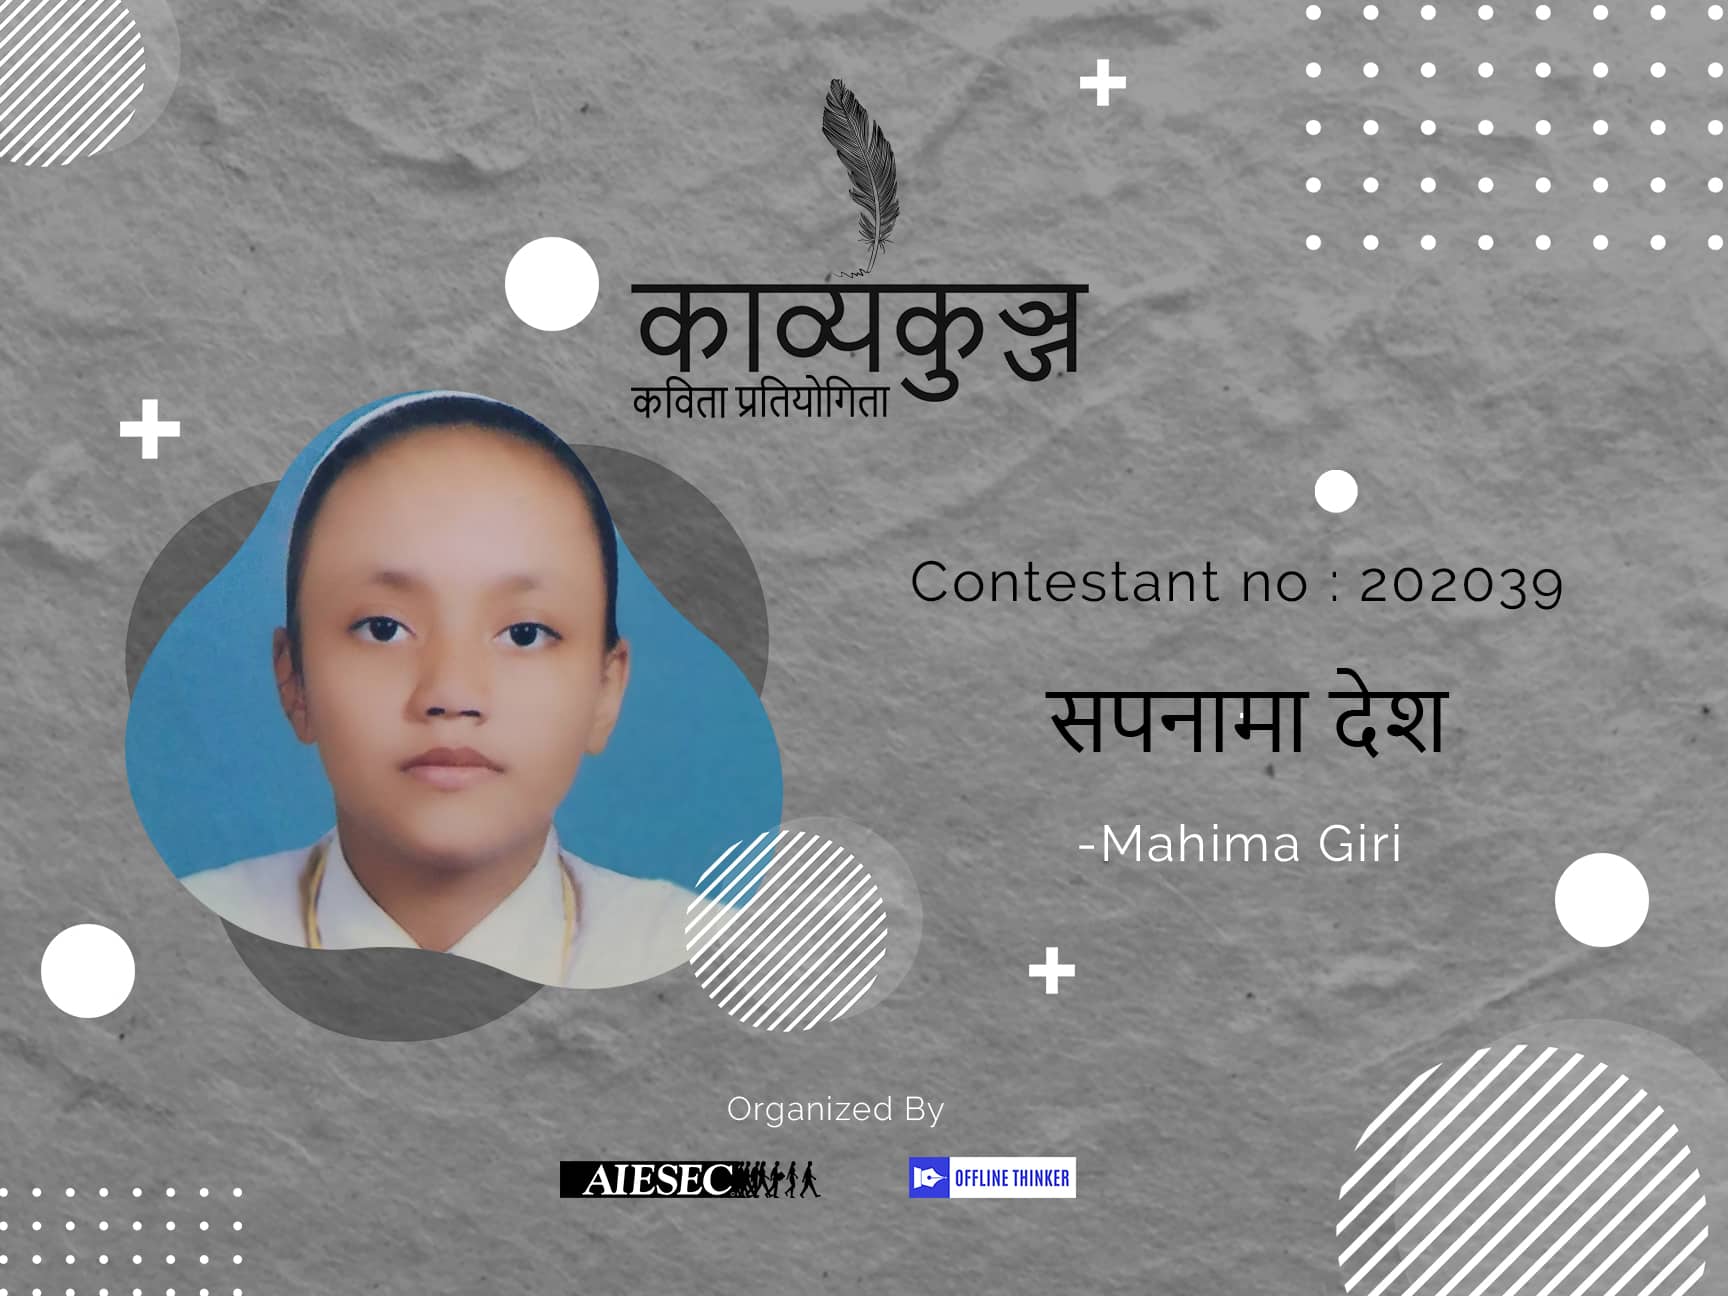 Mahima Giri